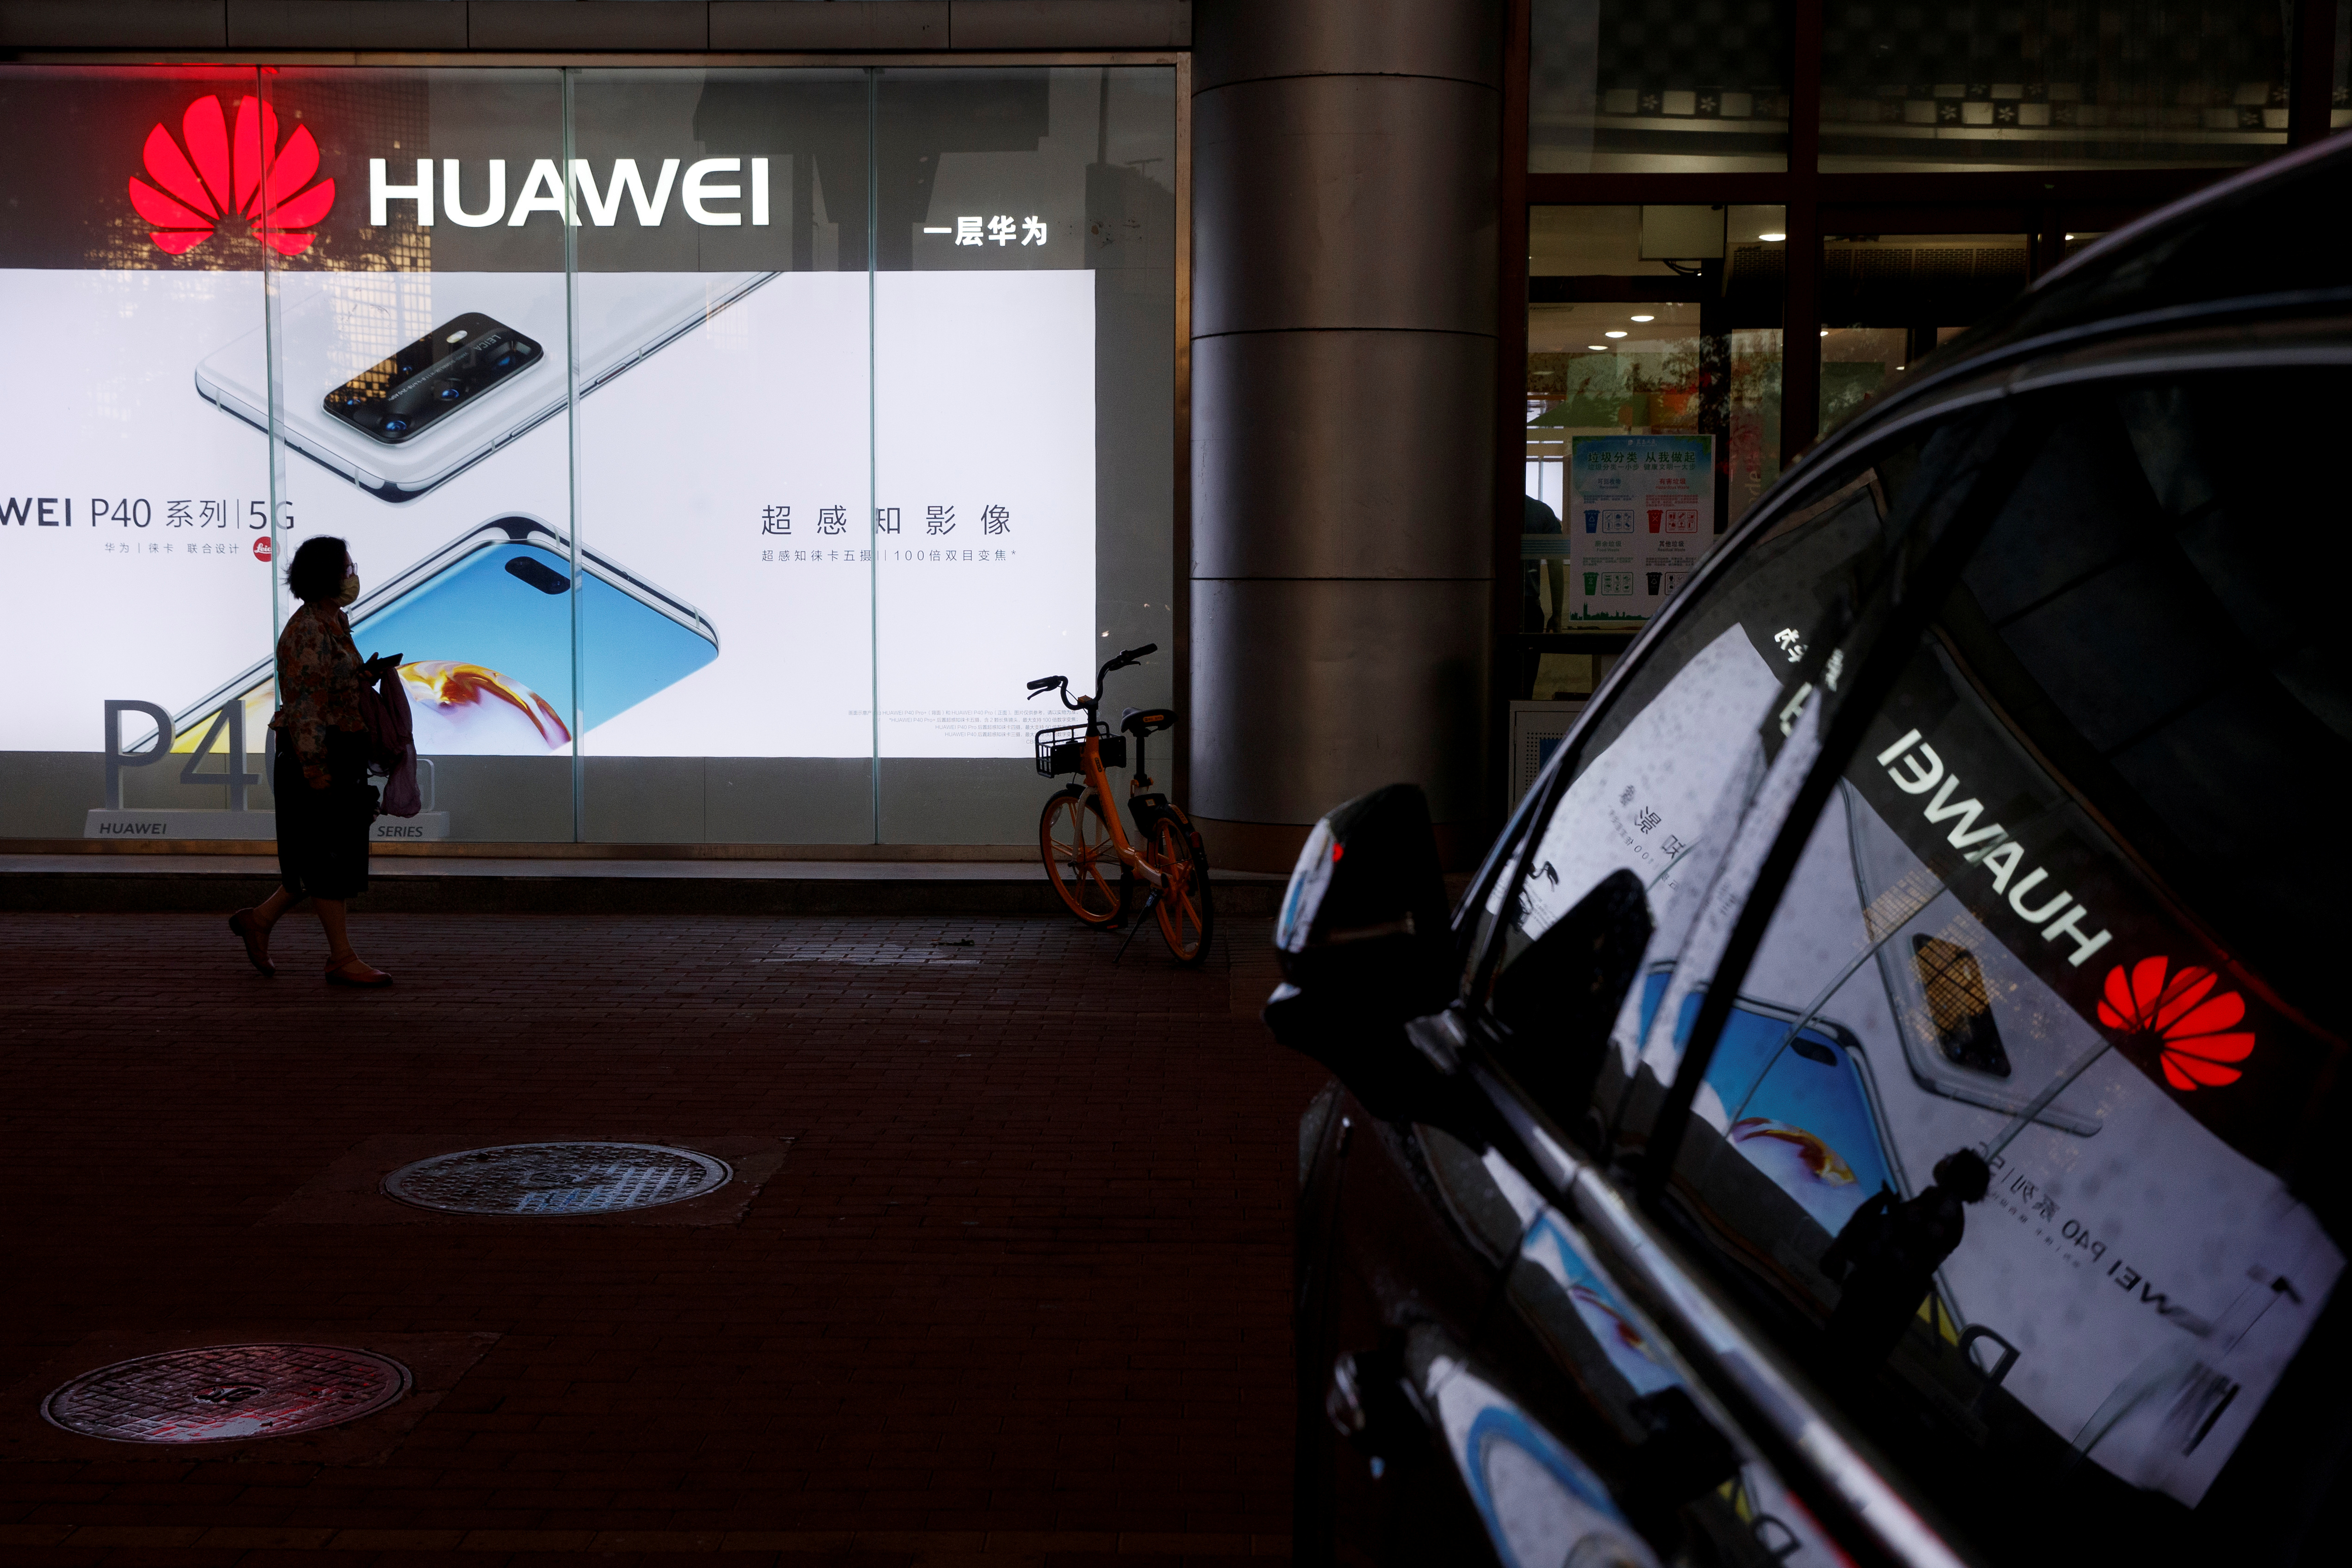 Una mujer pasa frente a una tienda Huawei en Beijing, China, el apsado 28 de mayo (Reuters)